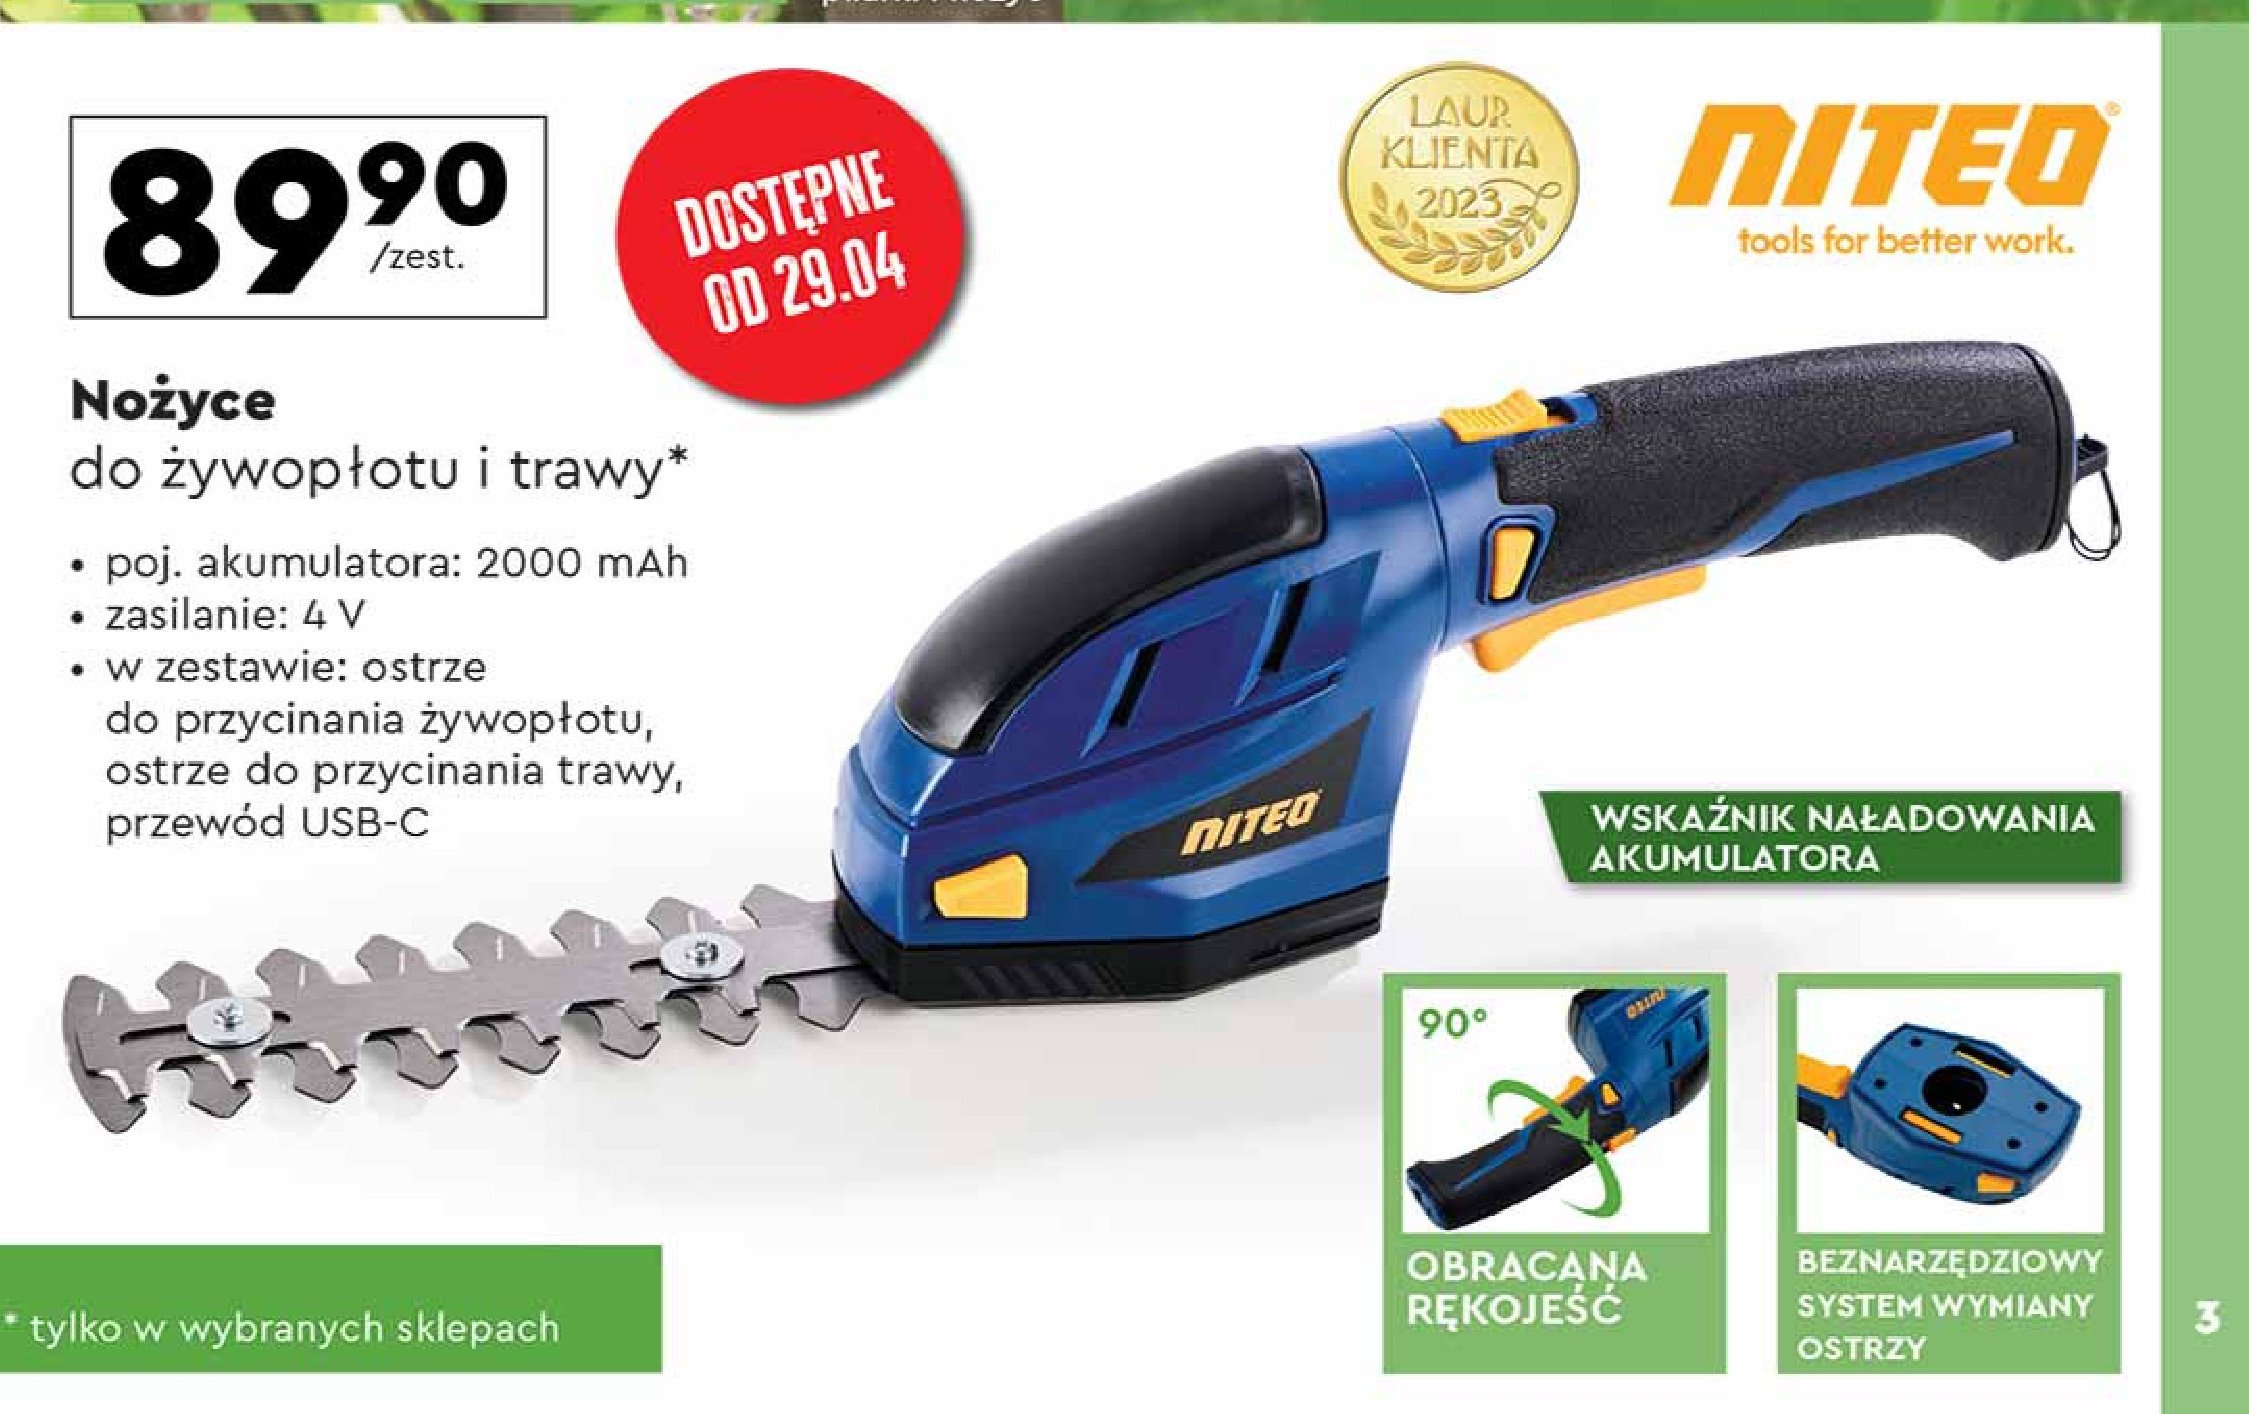 Nożyce do żywopłotu 450 w Niteo tools promocja